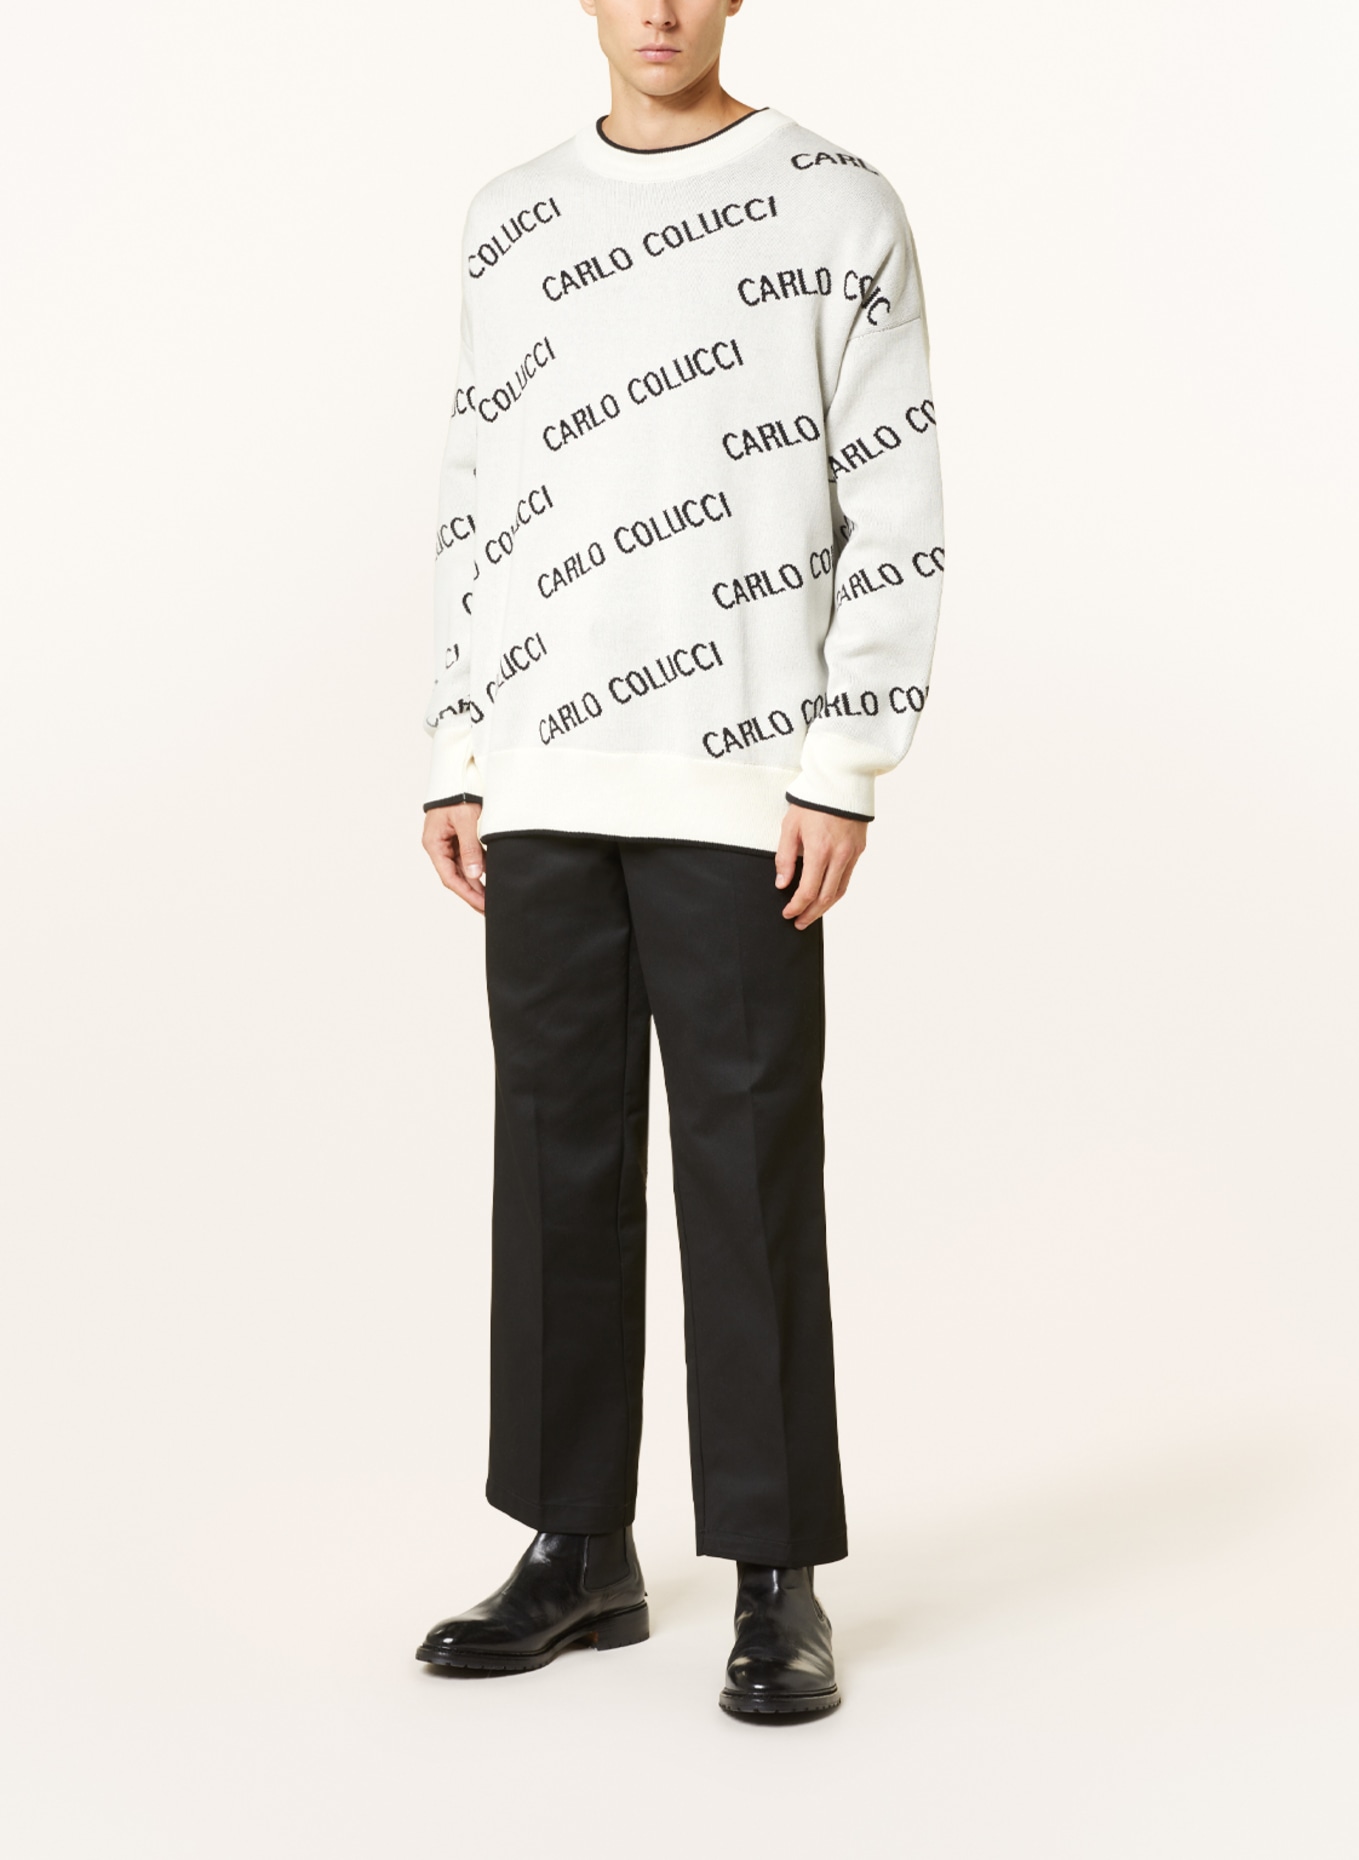 CARLO COLUCCI Pullover, Farbe: CREME/ SCHWARZ (Bild 2)